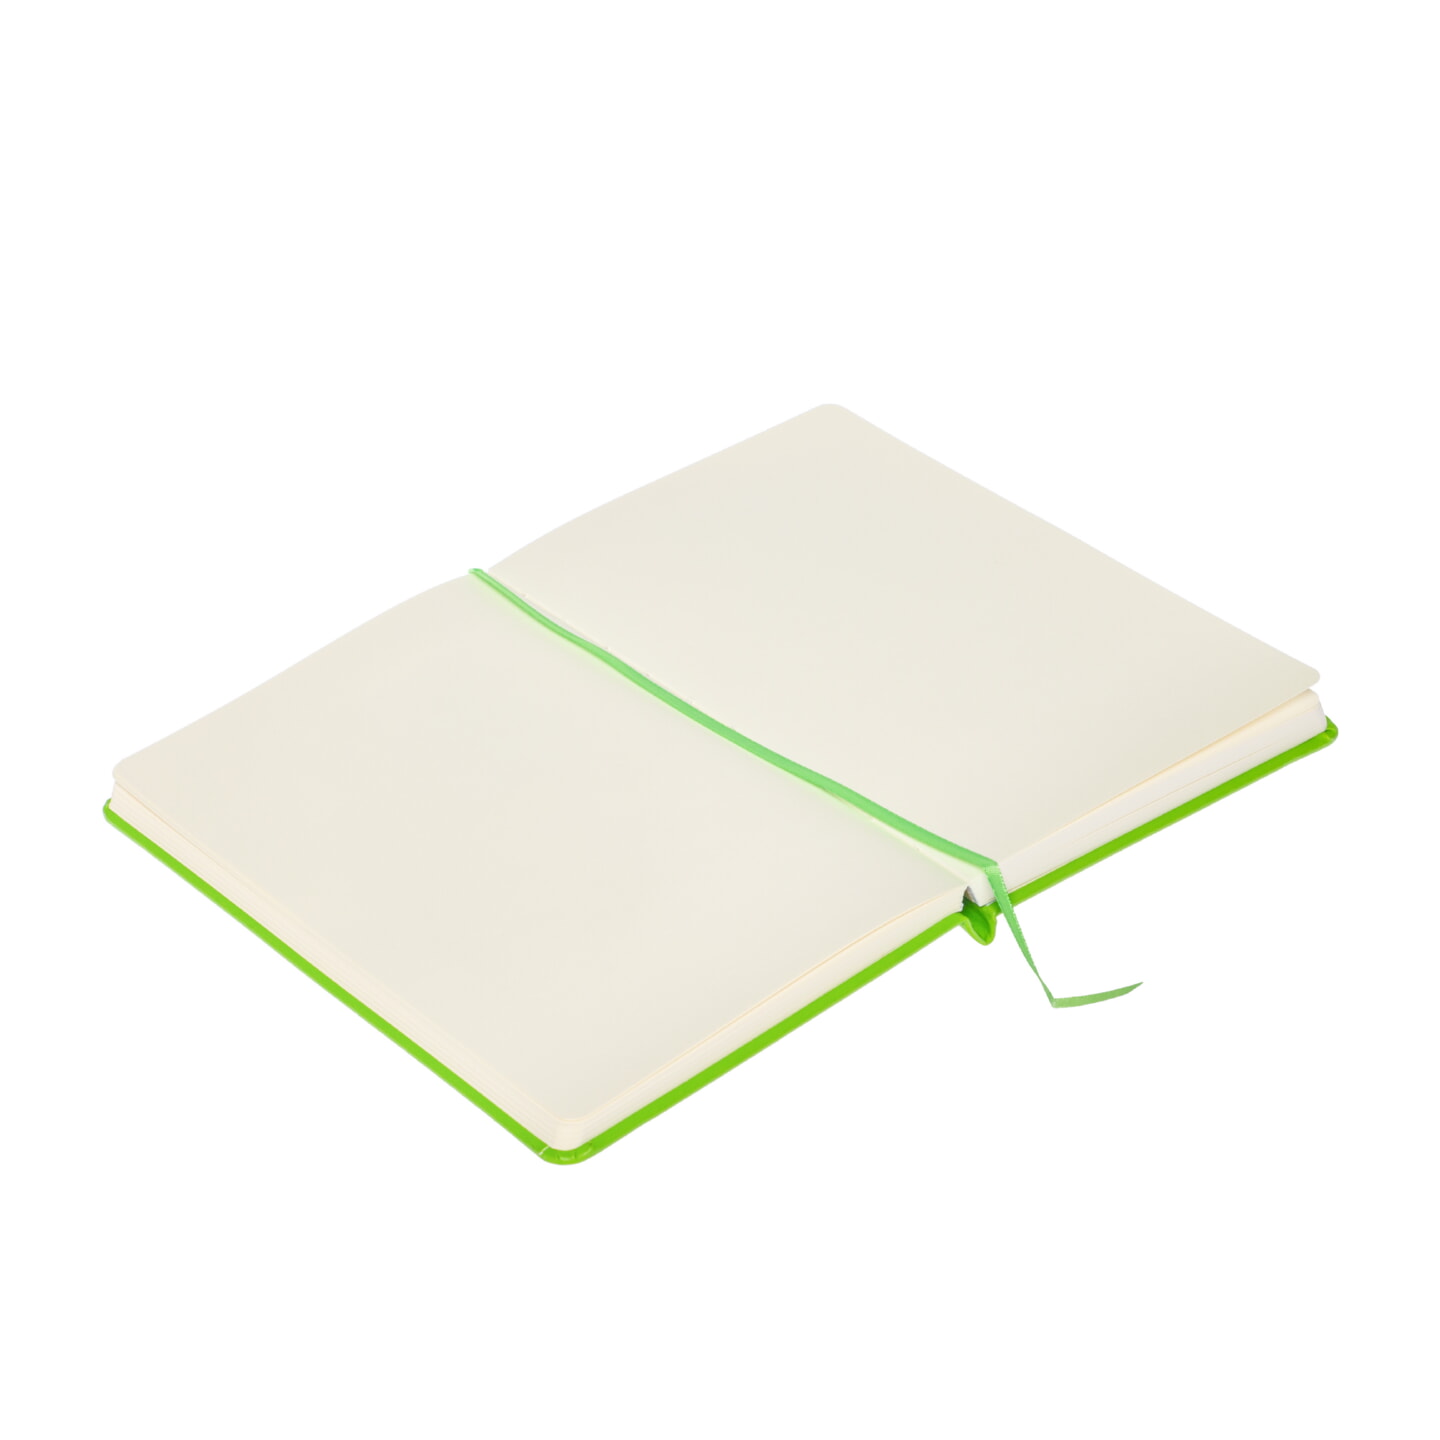 Блокнот для зарисовок Sketchmarker 140г/кв.м 80л твердая обложка Зеленый луг 5 размеров в ассортименте